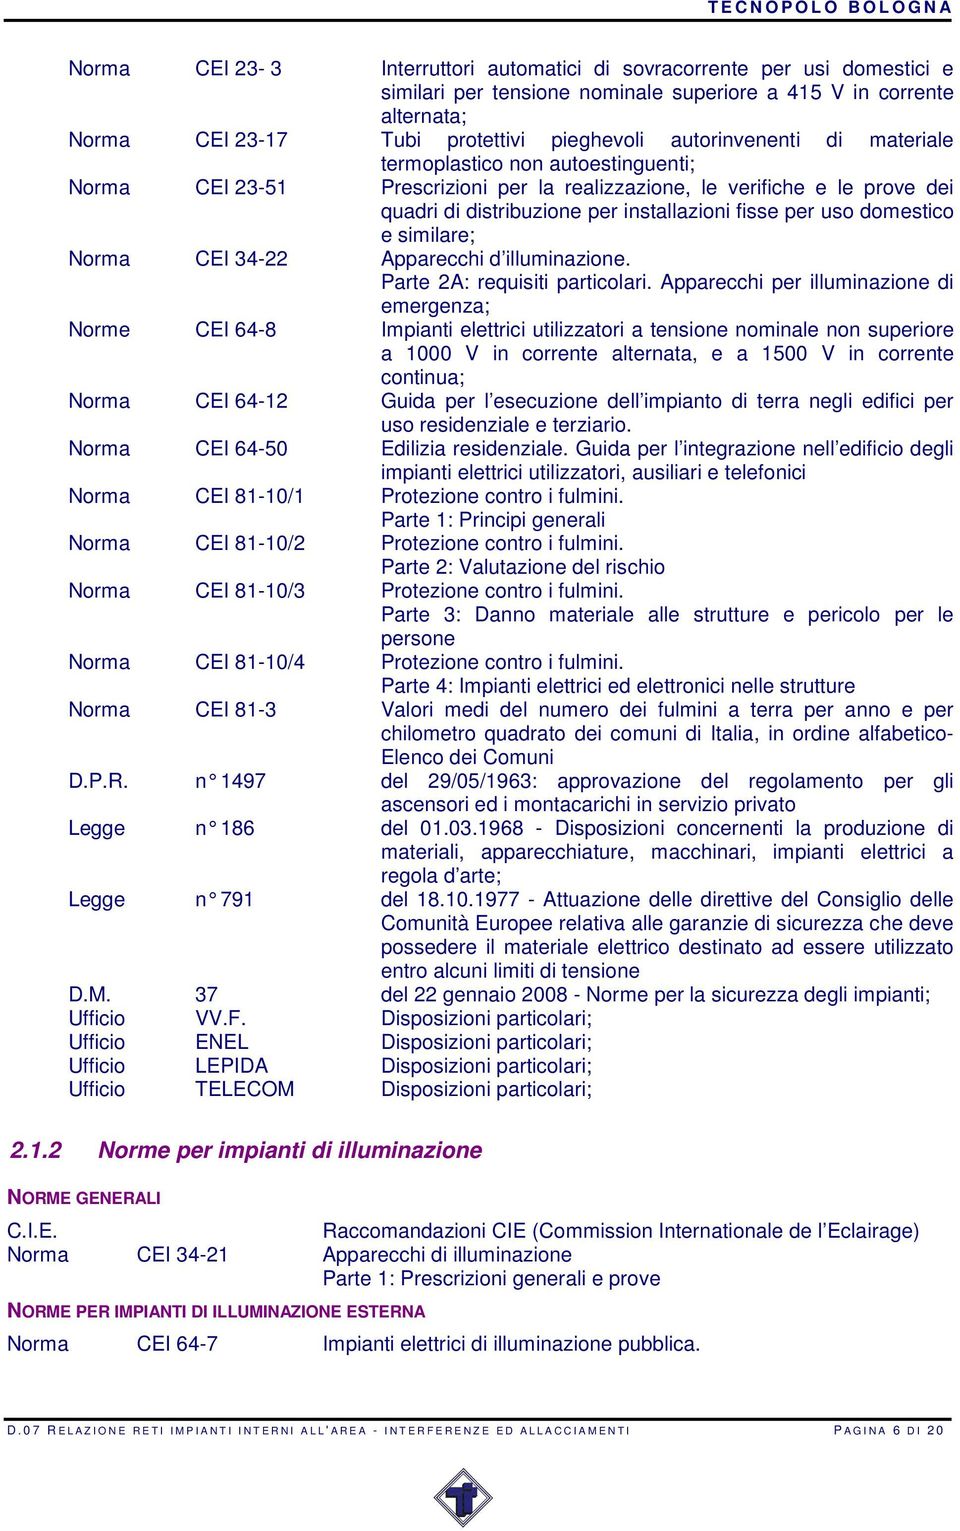 domestico e similare; Norma CEI 34-22 Apparecchi d illuminazione. Parte 2A: requisiti particolari.